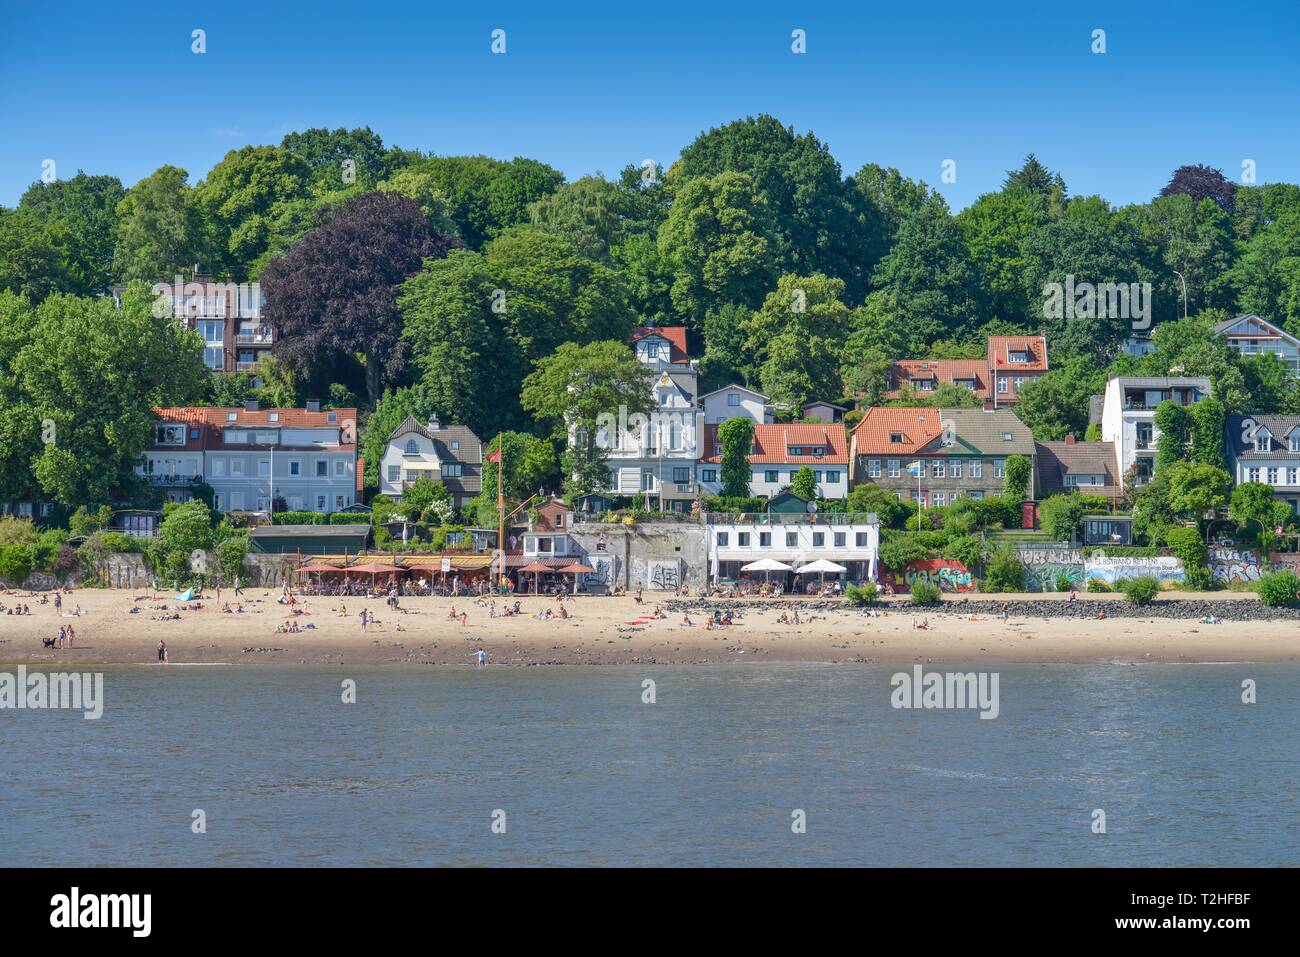 Villen an der Elbe Strand, Oevelgonne, Othmarschen, Hamburg, Deutschland Stockfoto